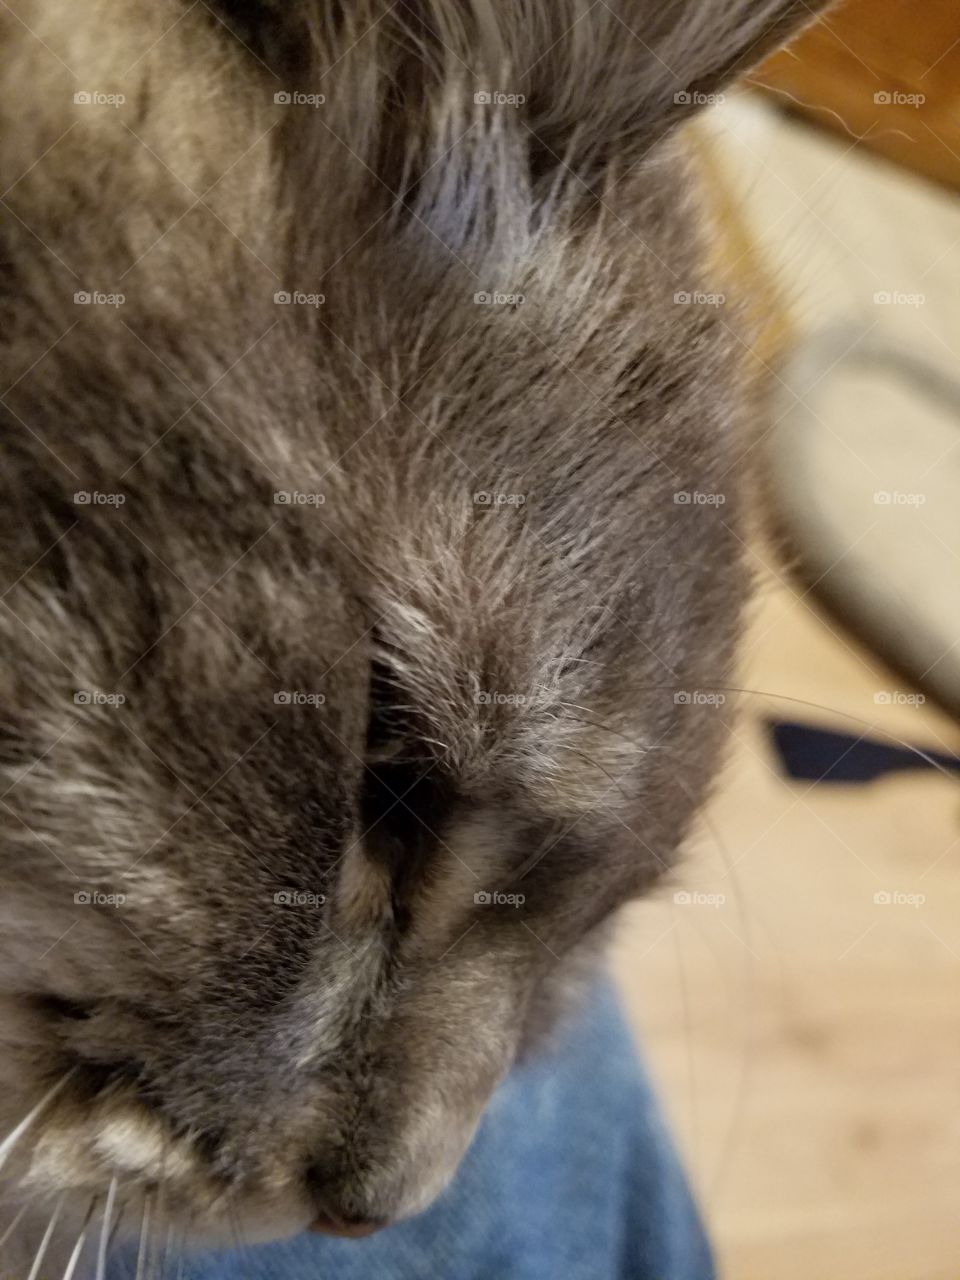 Cat enjoying a scratch